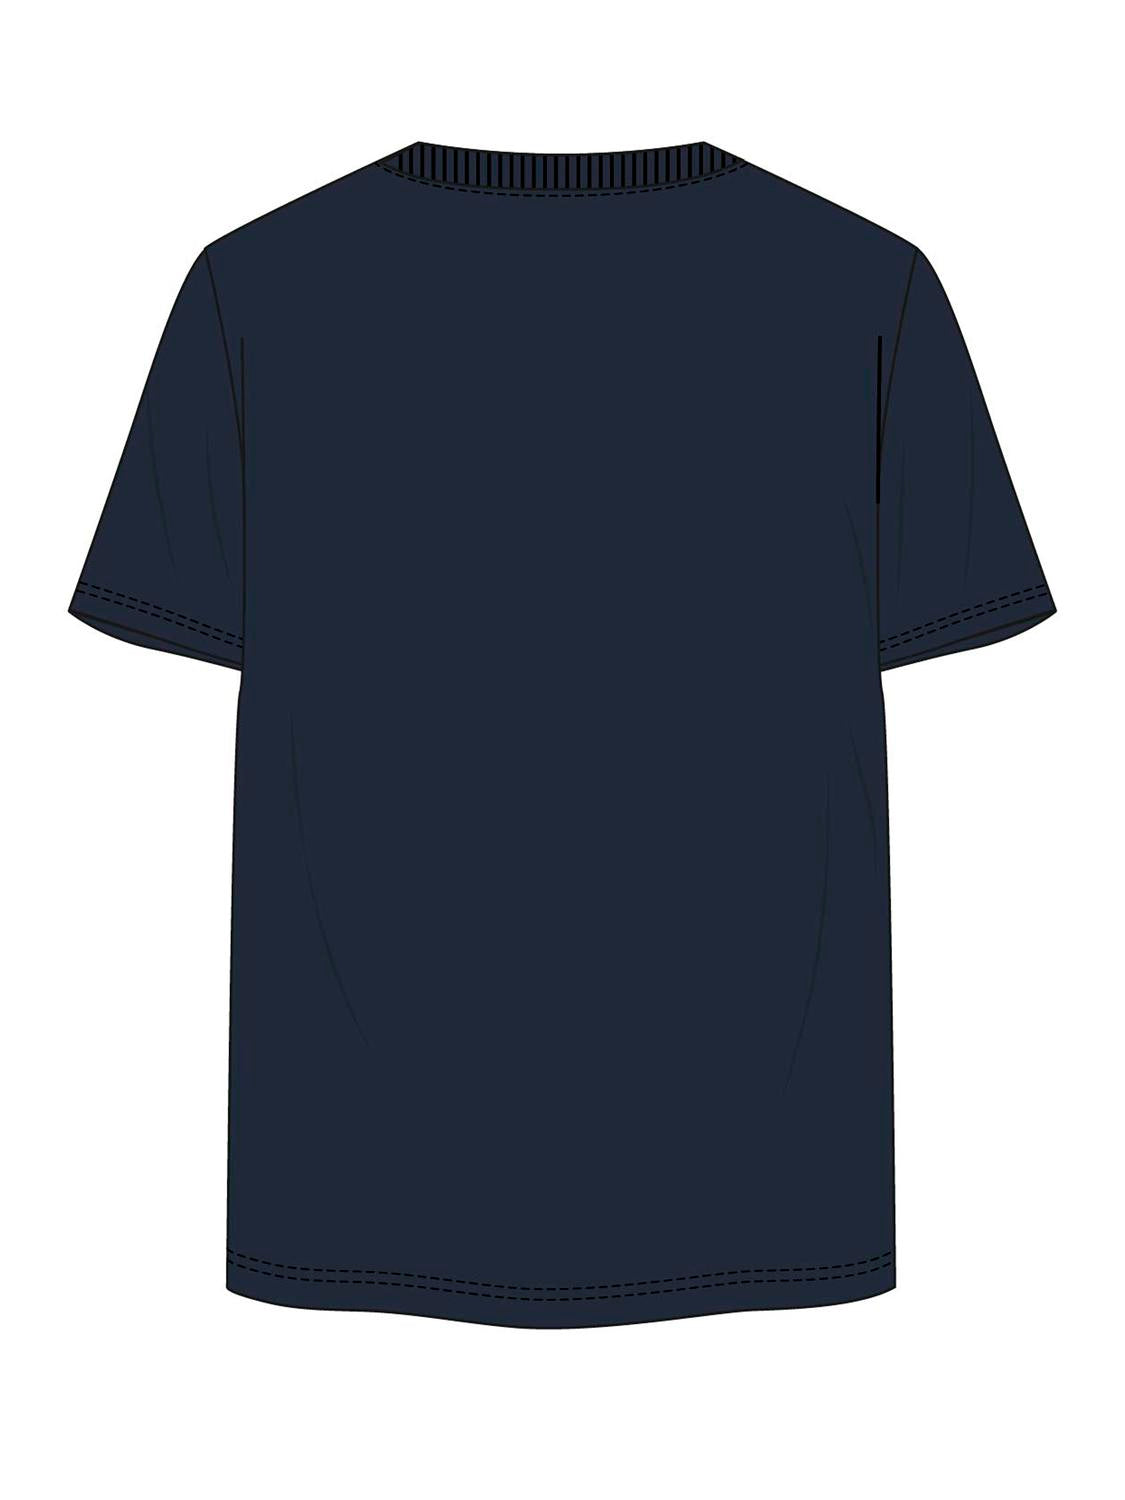 Camiseta azul marino estampada - JCODRAGON